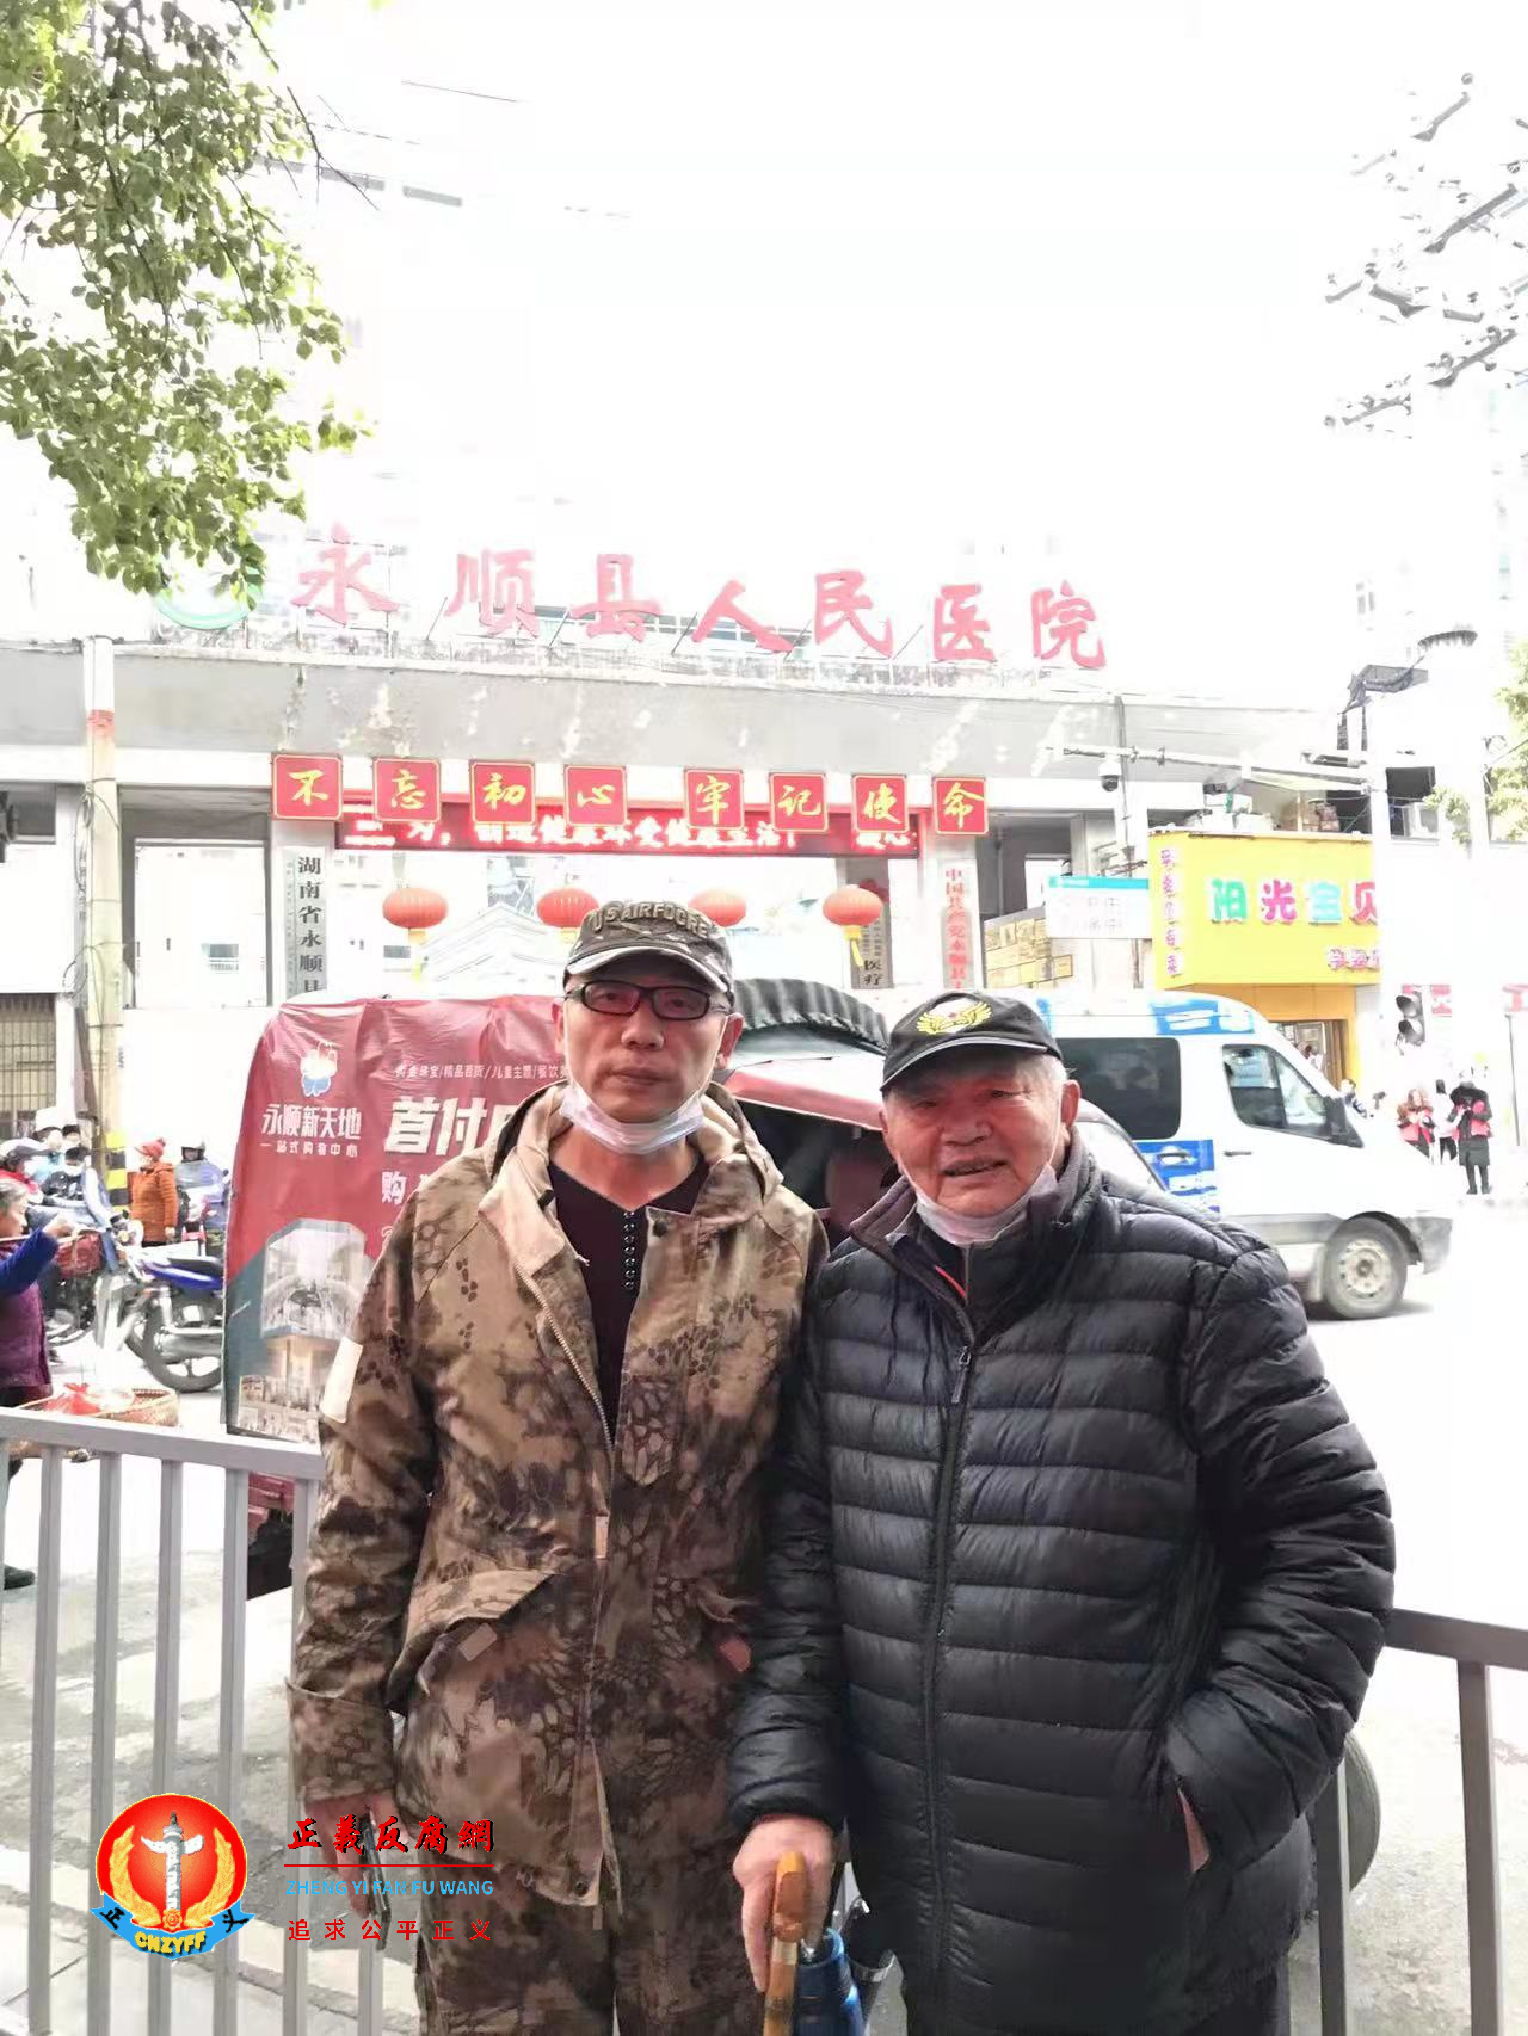 湖南公民程晓峰、欧阳经华和另一位网民赶到永顺县医院寻找李田田.png